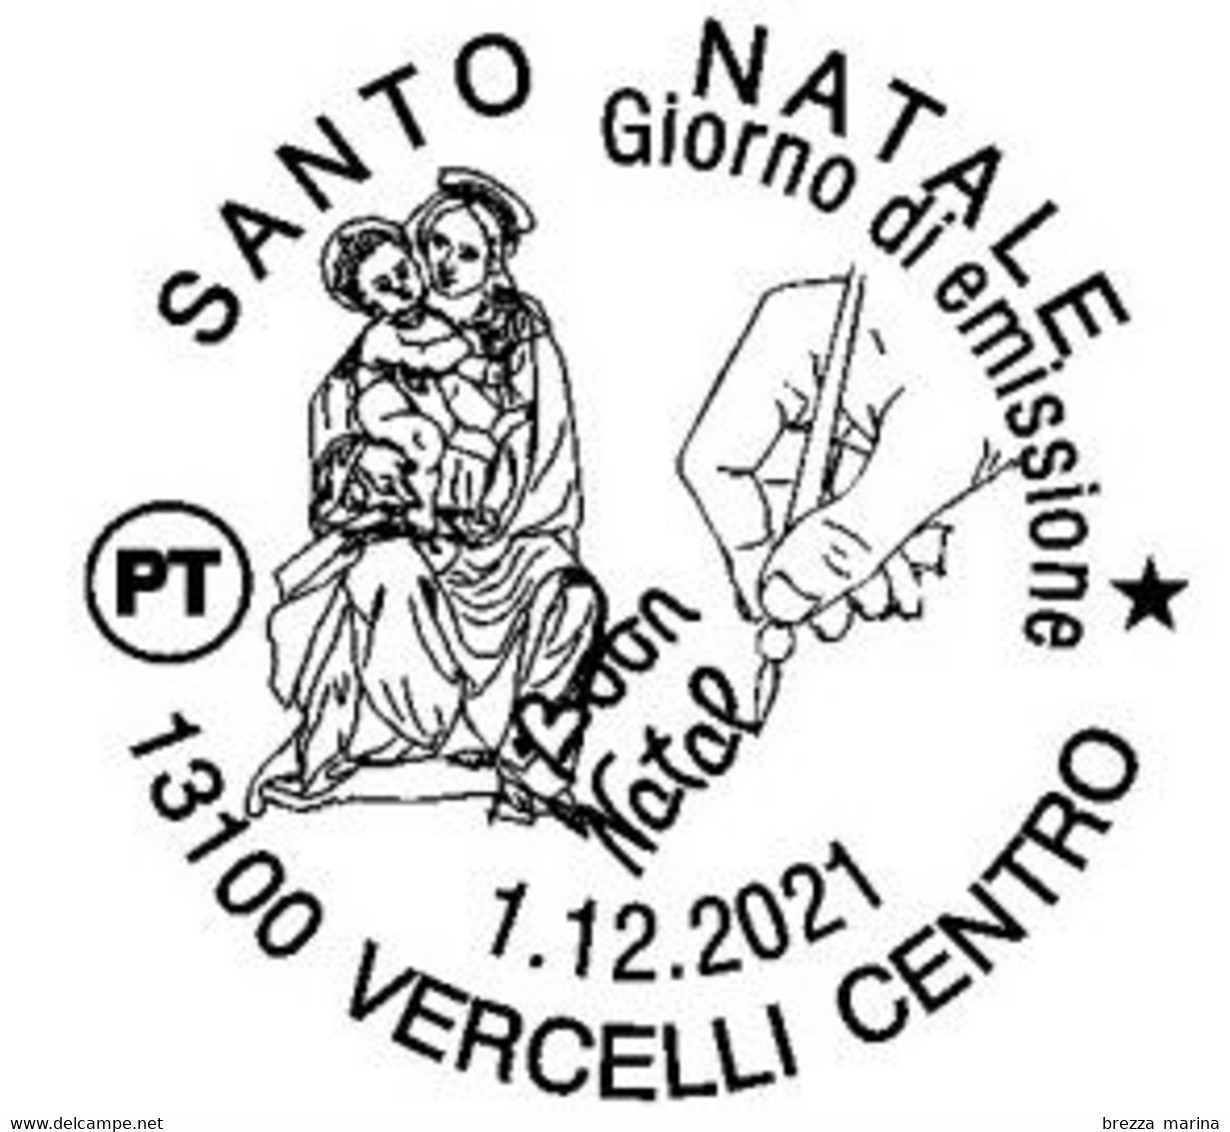 ITALIA - Usato - 2021 - Natale - Madonna Del Cane, Di Bernardino Lanino - In Trono Con S.Bernardino E S.Francesco - B - 2021-...: Gebraucht